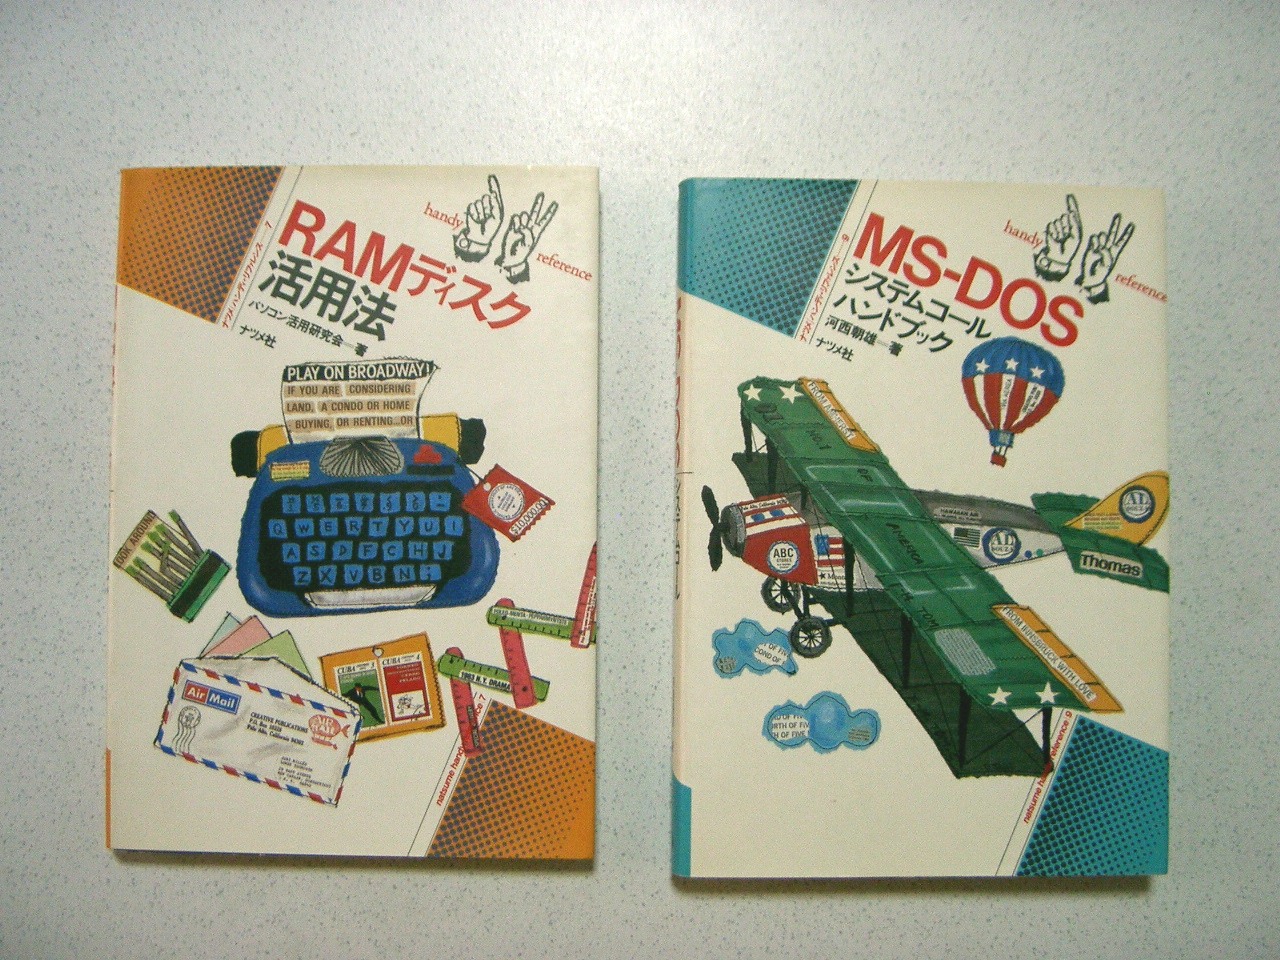 PC-9801 コレクション